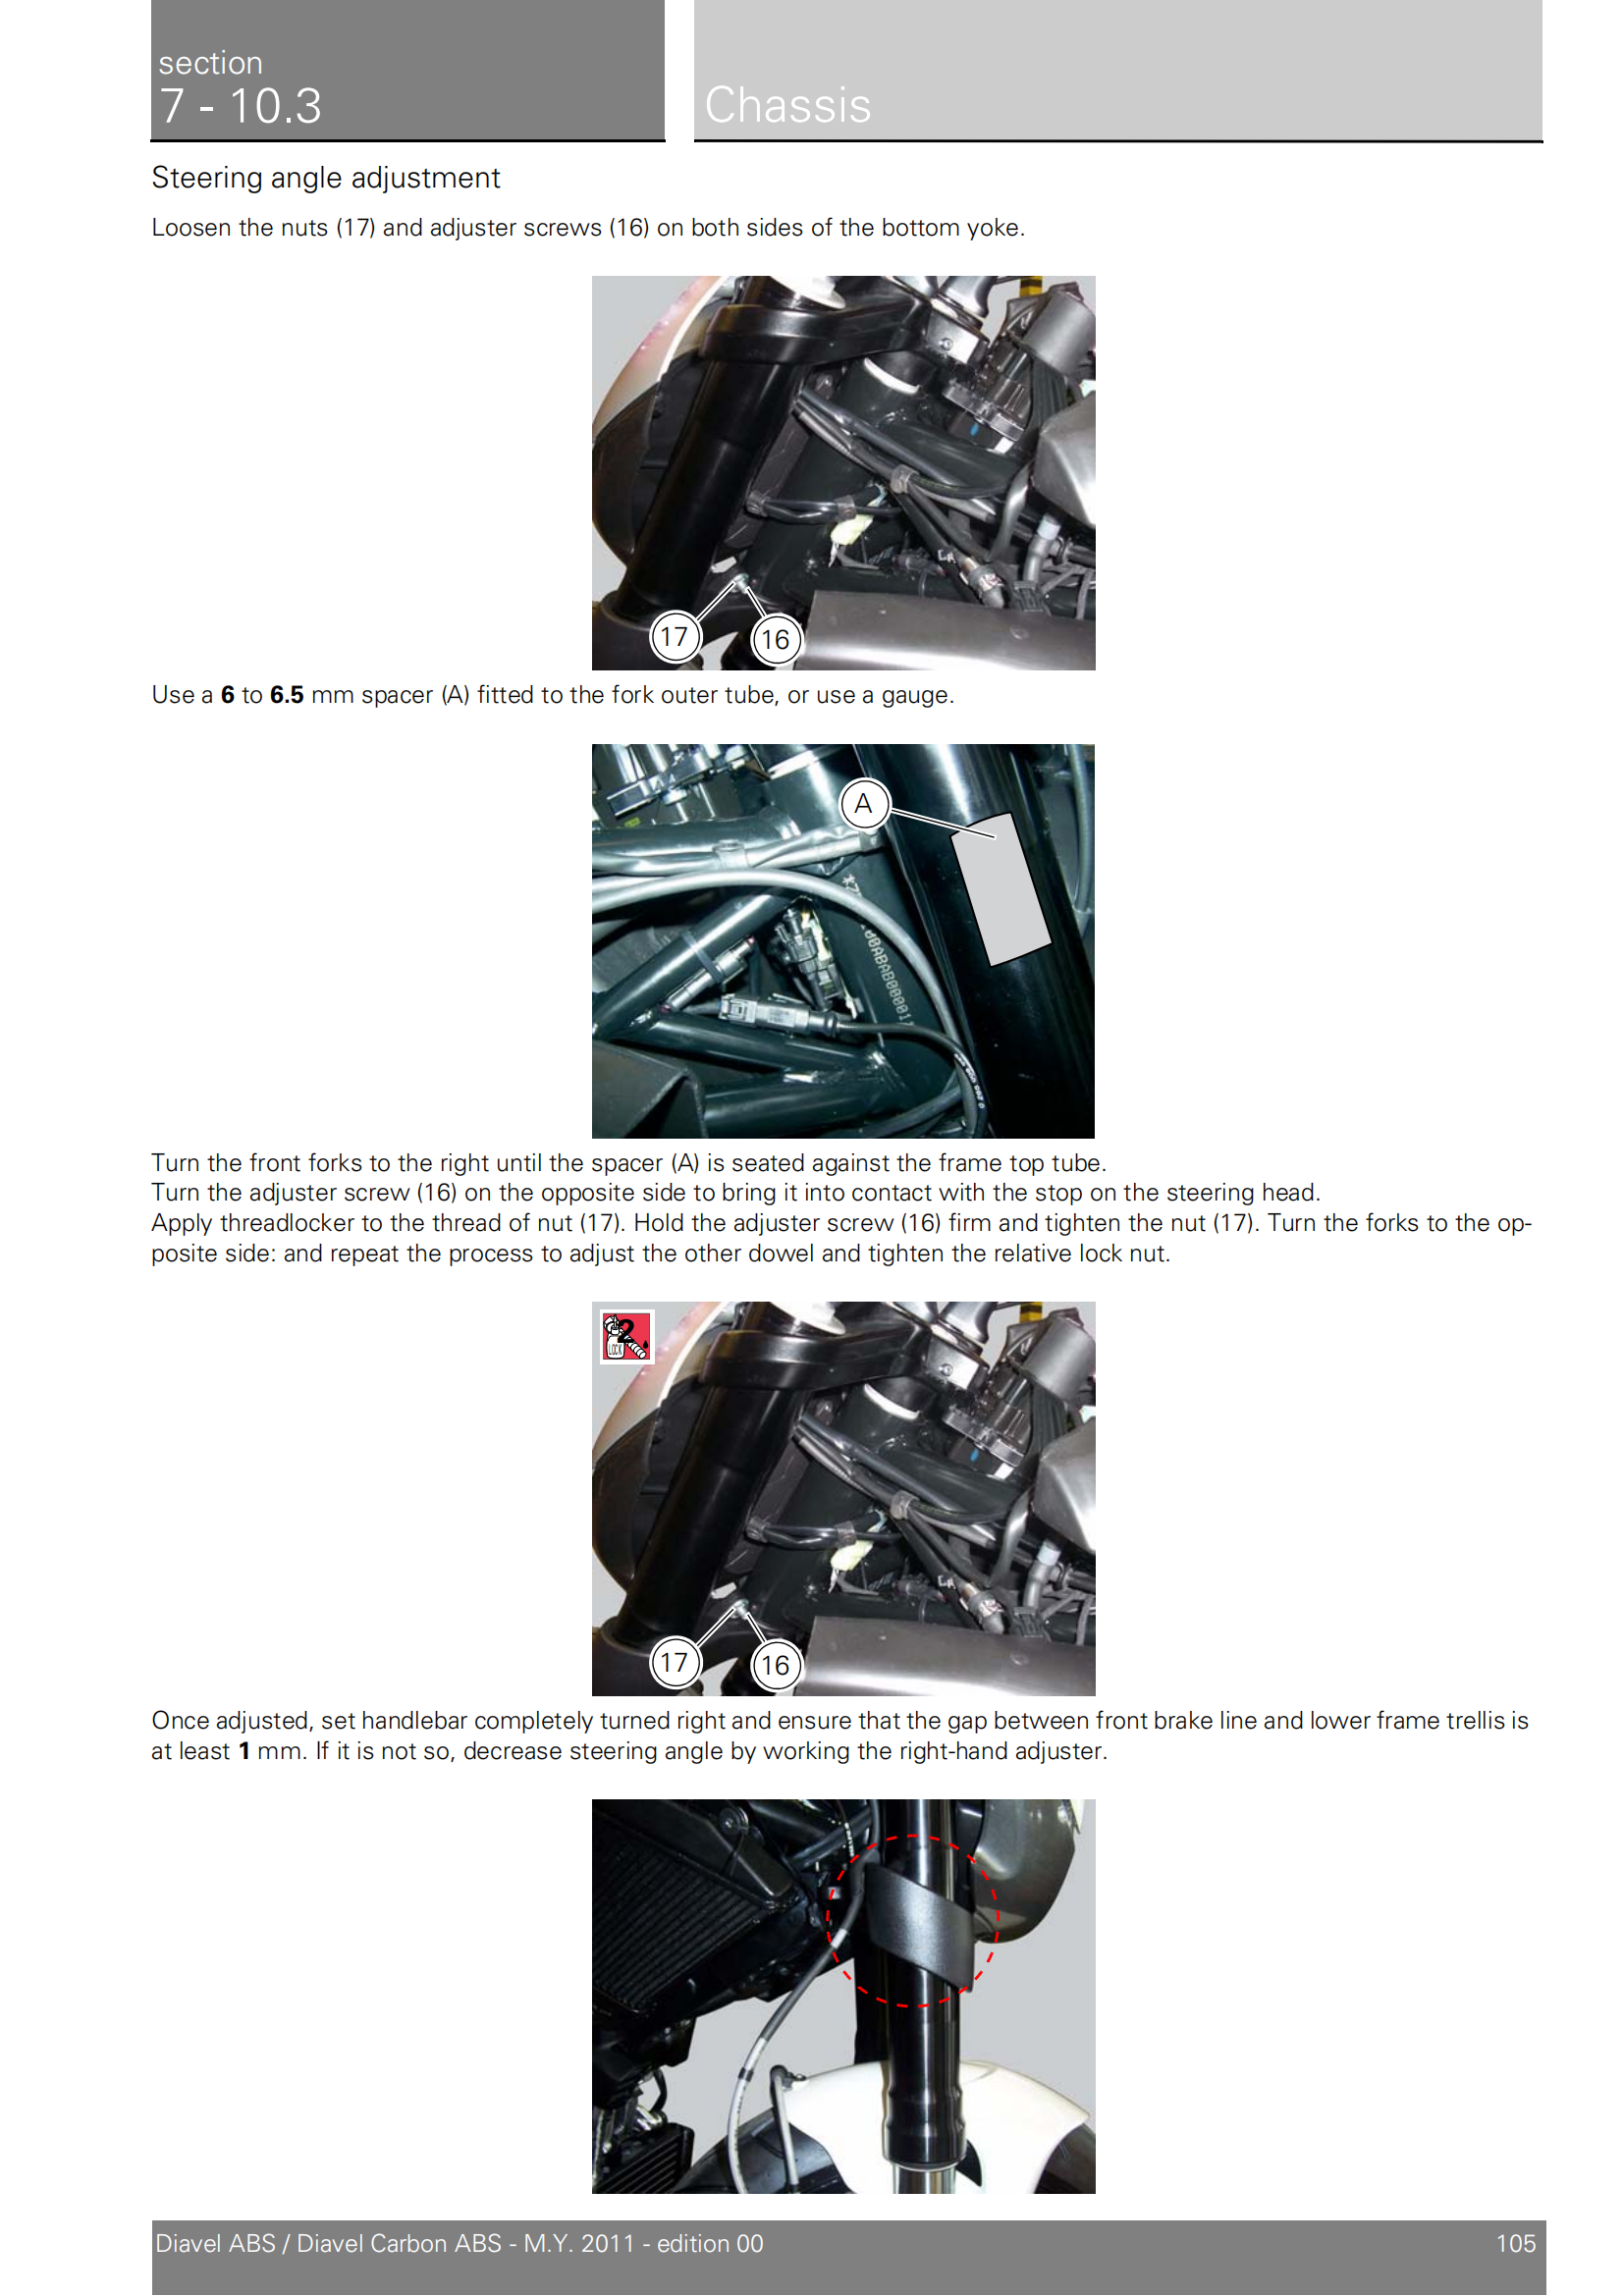 原版英文2011年杜卡迪大魔鬼 Ducati Diavel ABS维修手册插图3